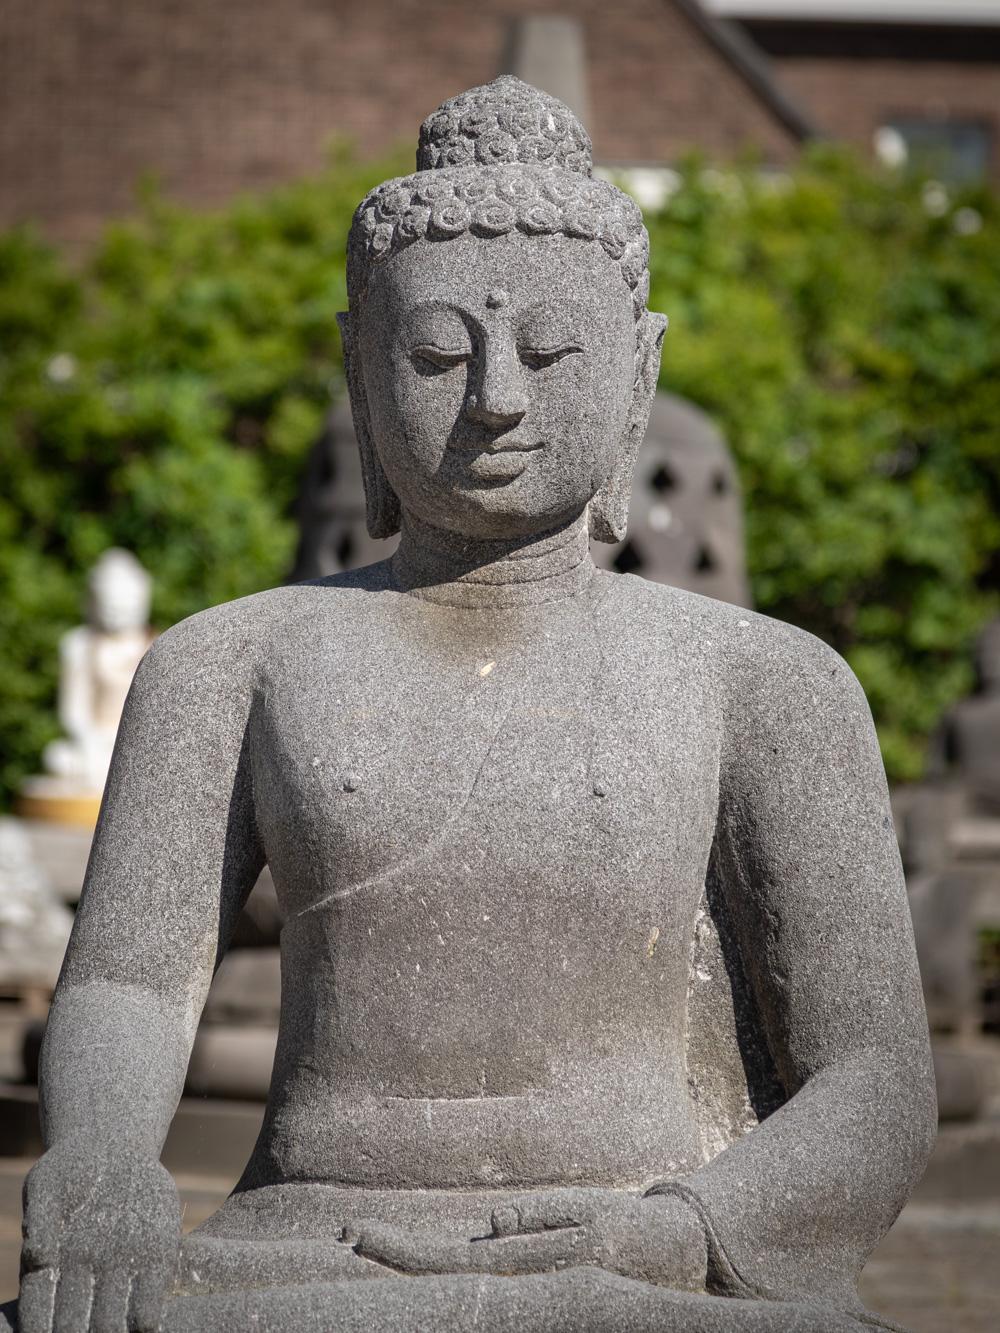 Die große Lavastein-Buddha-Statue aus Indonesien ist ein bemerkenswertes Zeugnis künstlerischen Könnens und spiritueller Darstellung. Die aus einem einzigen Lavasteinblock handgeschnitzte Statue hat eine beeindruckende Höhe von 107 cm und misst 87